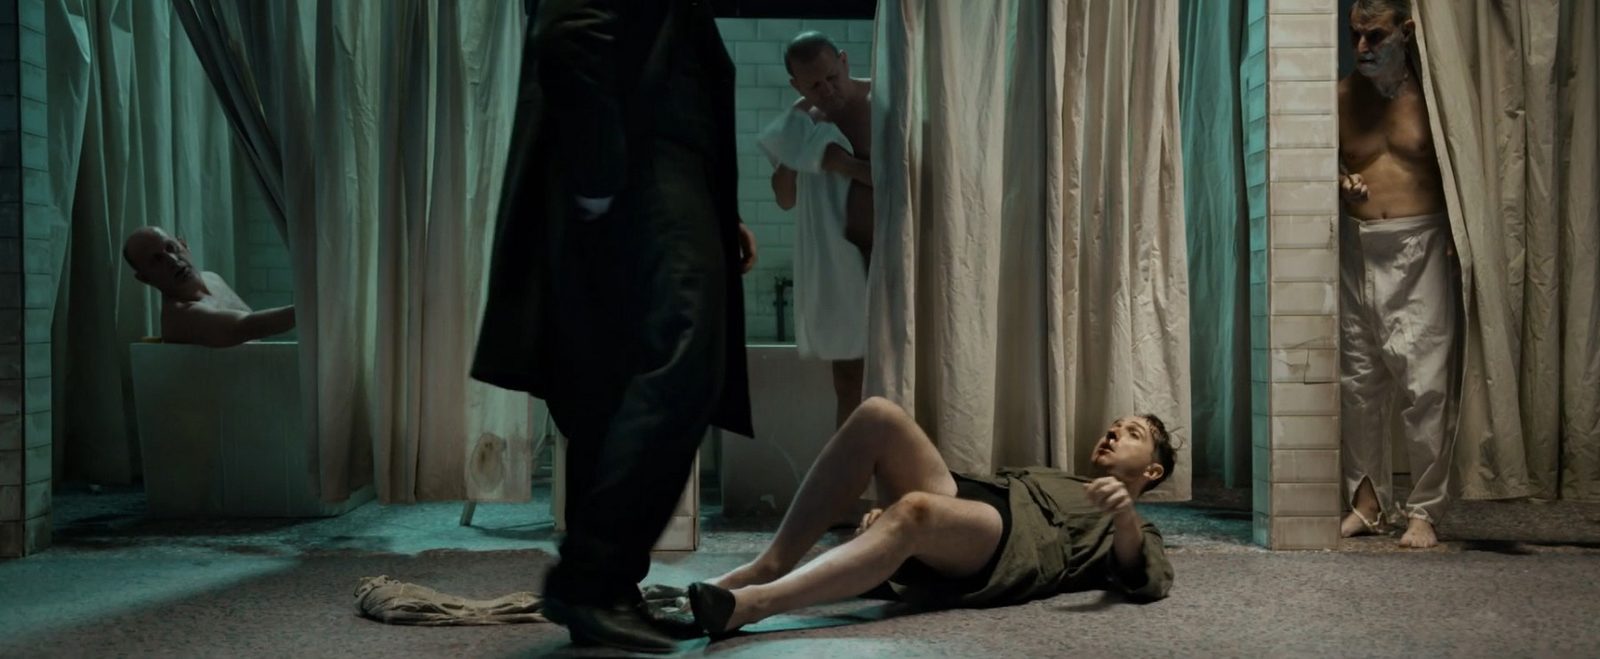 Детектив-одиночка завязывает драку в эксклюзивном отрывке фильма «Хинтерленд: город грехов»